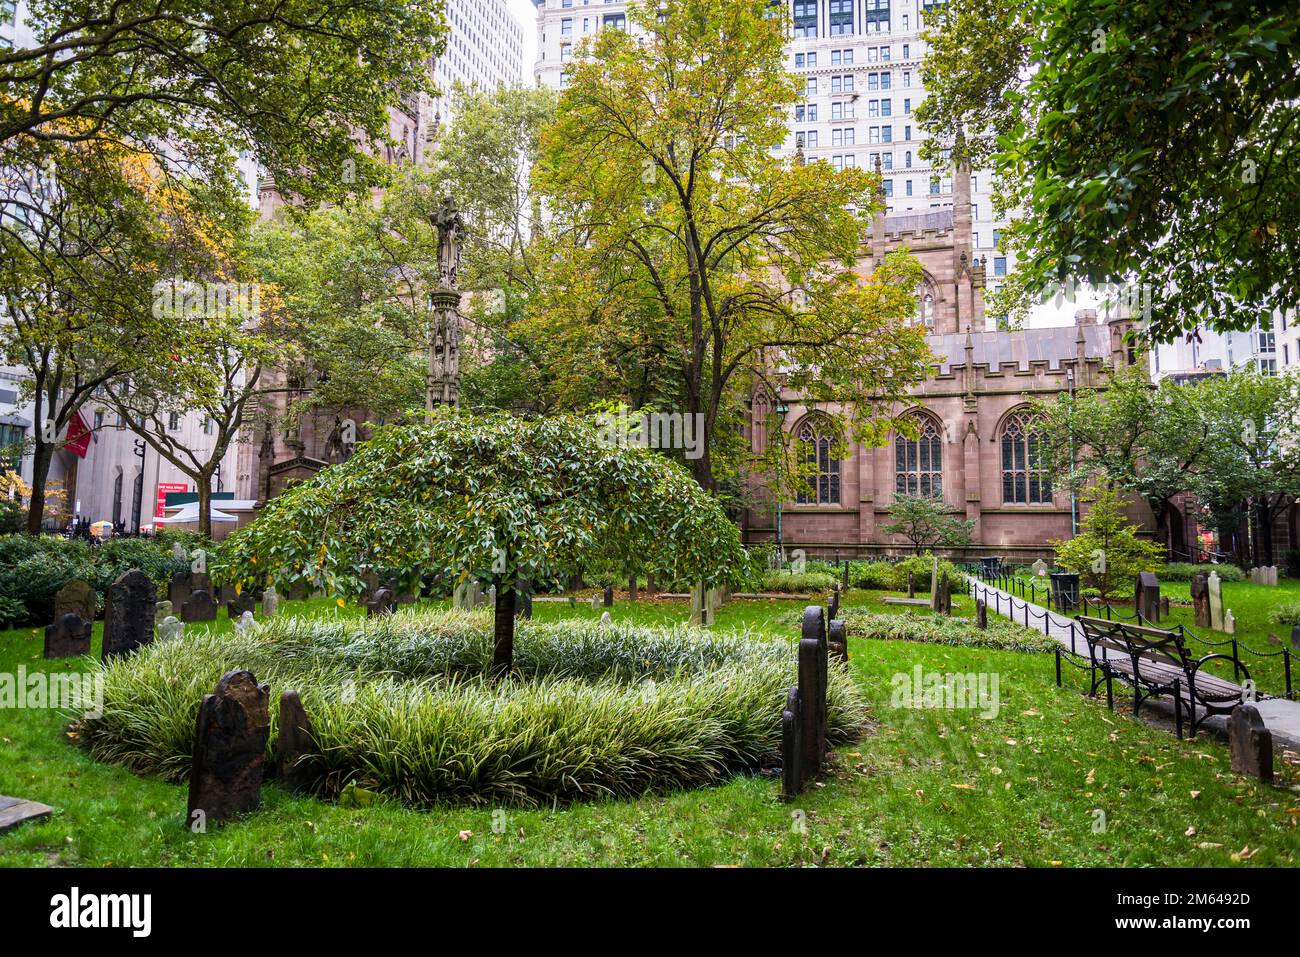 Trinity Church, historische Bischofskirche und Friedhof, wo Alexander Hamilton und andere frühe Amerikaner begraben sind, Finanzviertel von Lower Manhattan Stockfoto